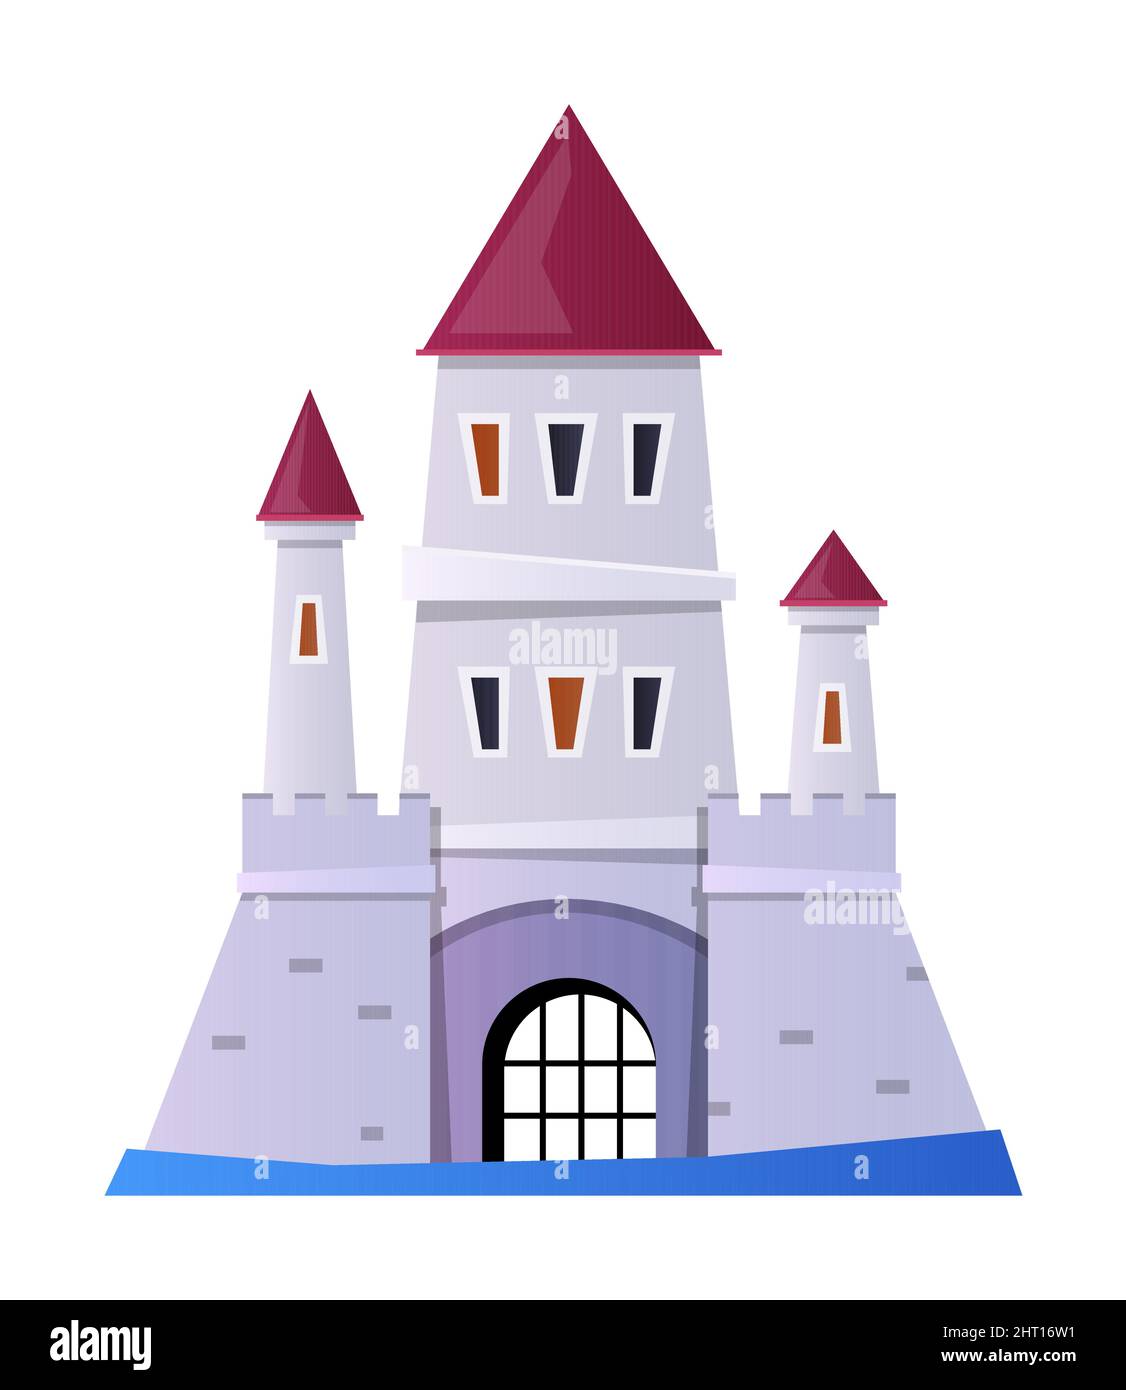 Forteresse de fossé - objet de style design plat sur fond blanc. Image nette et détaillée d'un château en pierre imprégnable avec trois tours, entouré d'eau. Illustration de Vecteur